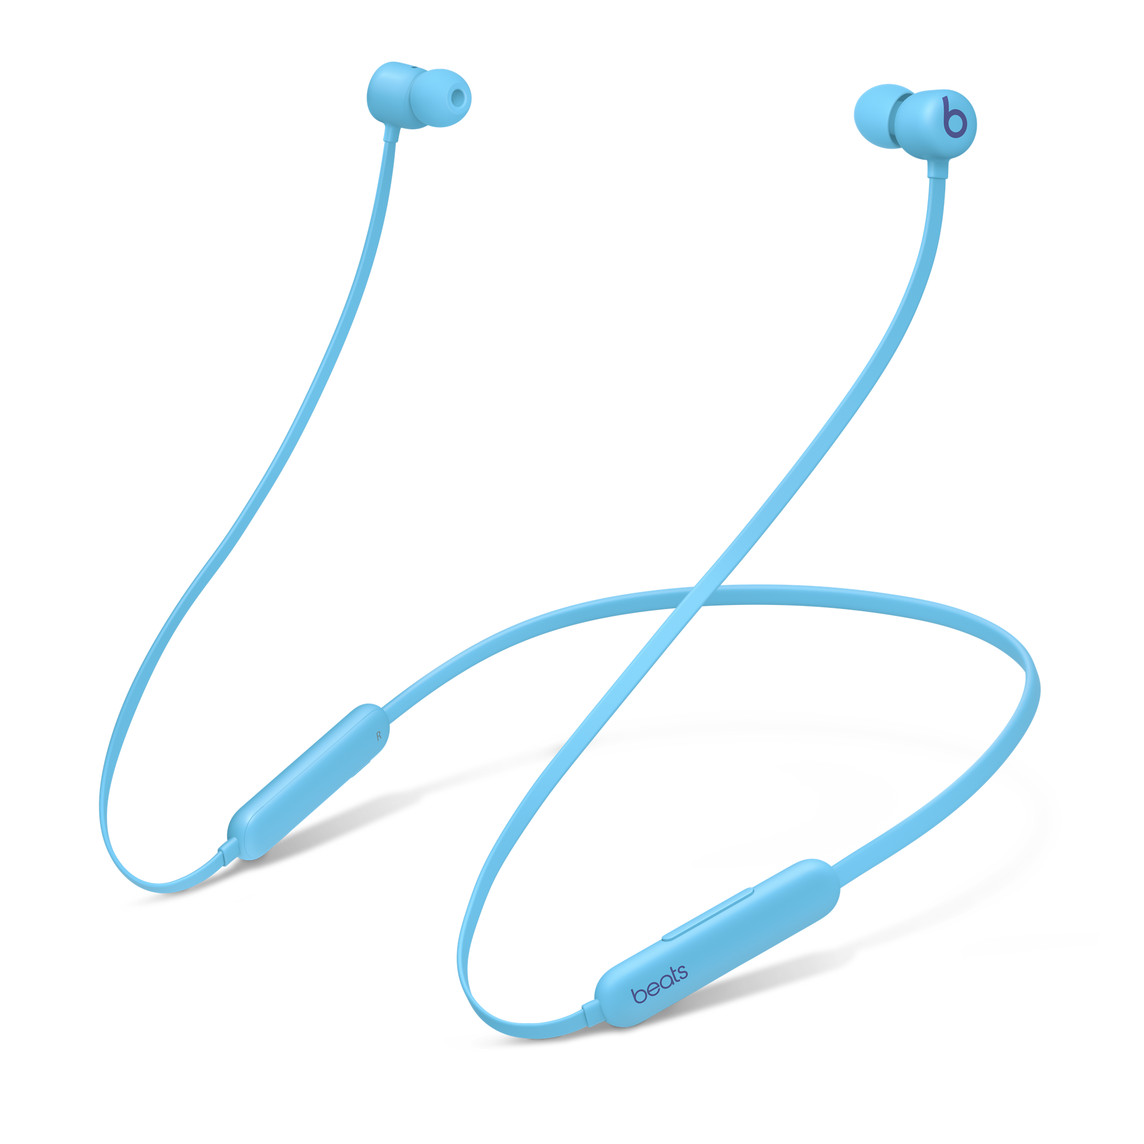 풍부하고 정확한 베이스로 구성된 훌륭한 스테레오 분리를 이끌어내는 듀얼 챔버 어쿠스틱 디자인의 플레임 블루 색상의 Beats Flex All-Day Wireless Earphones.